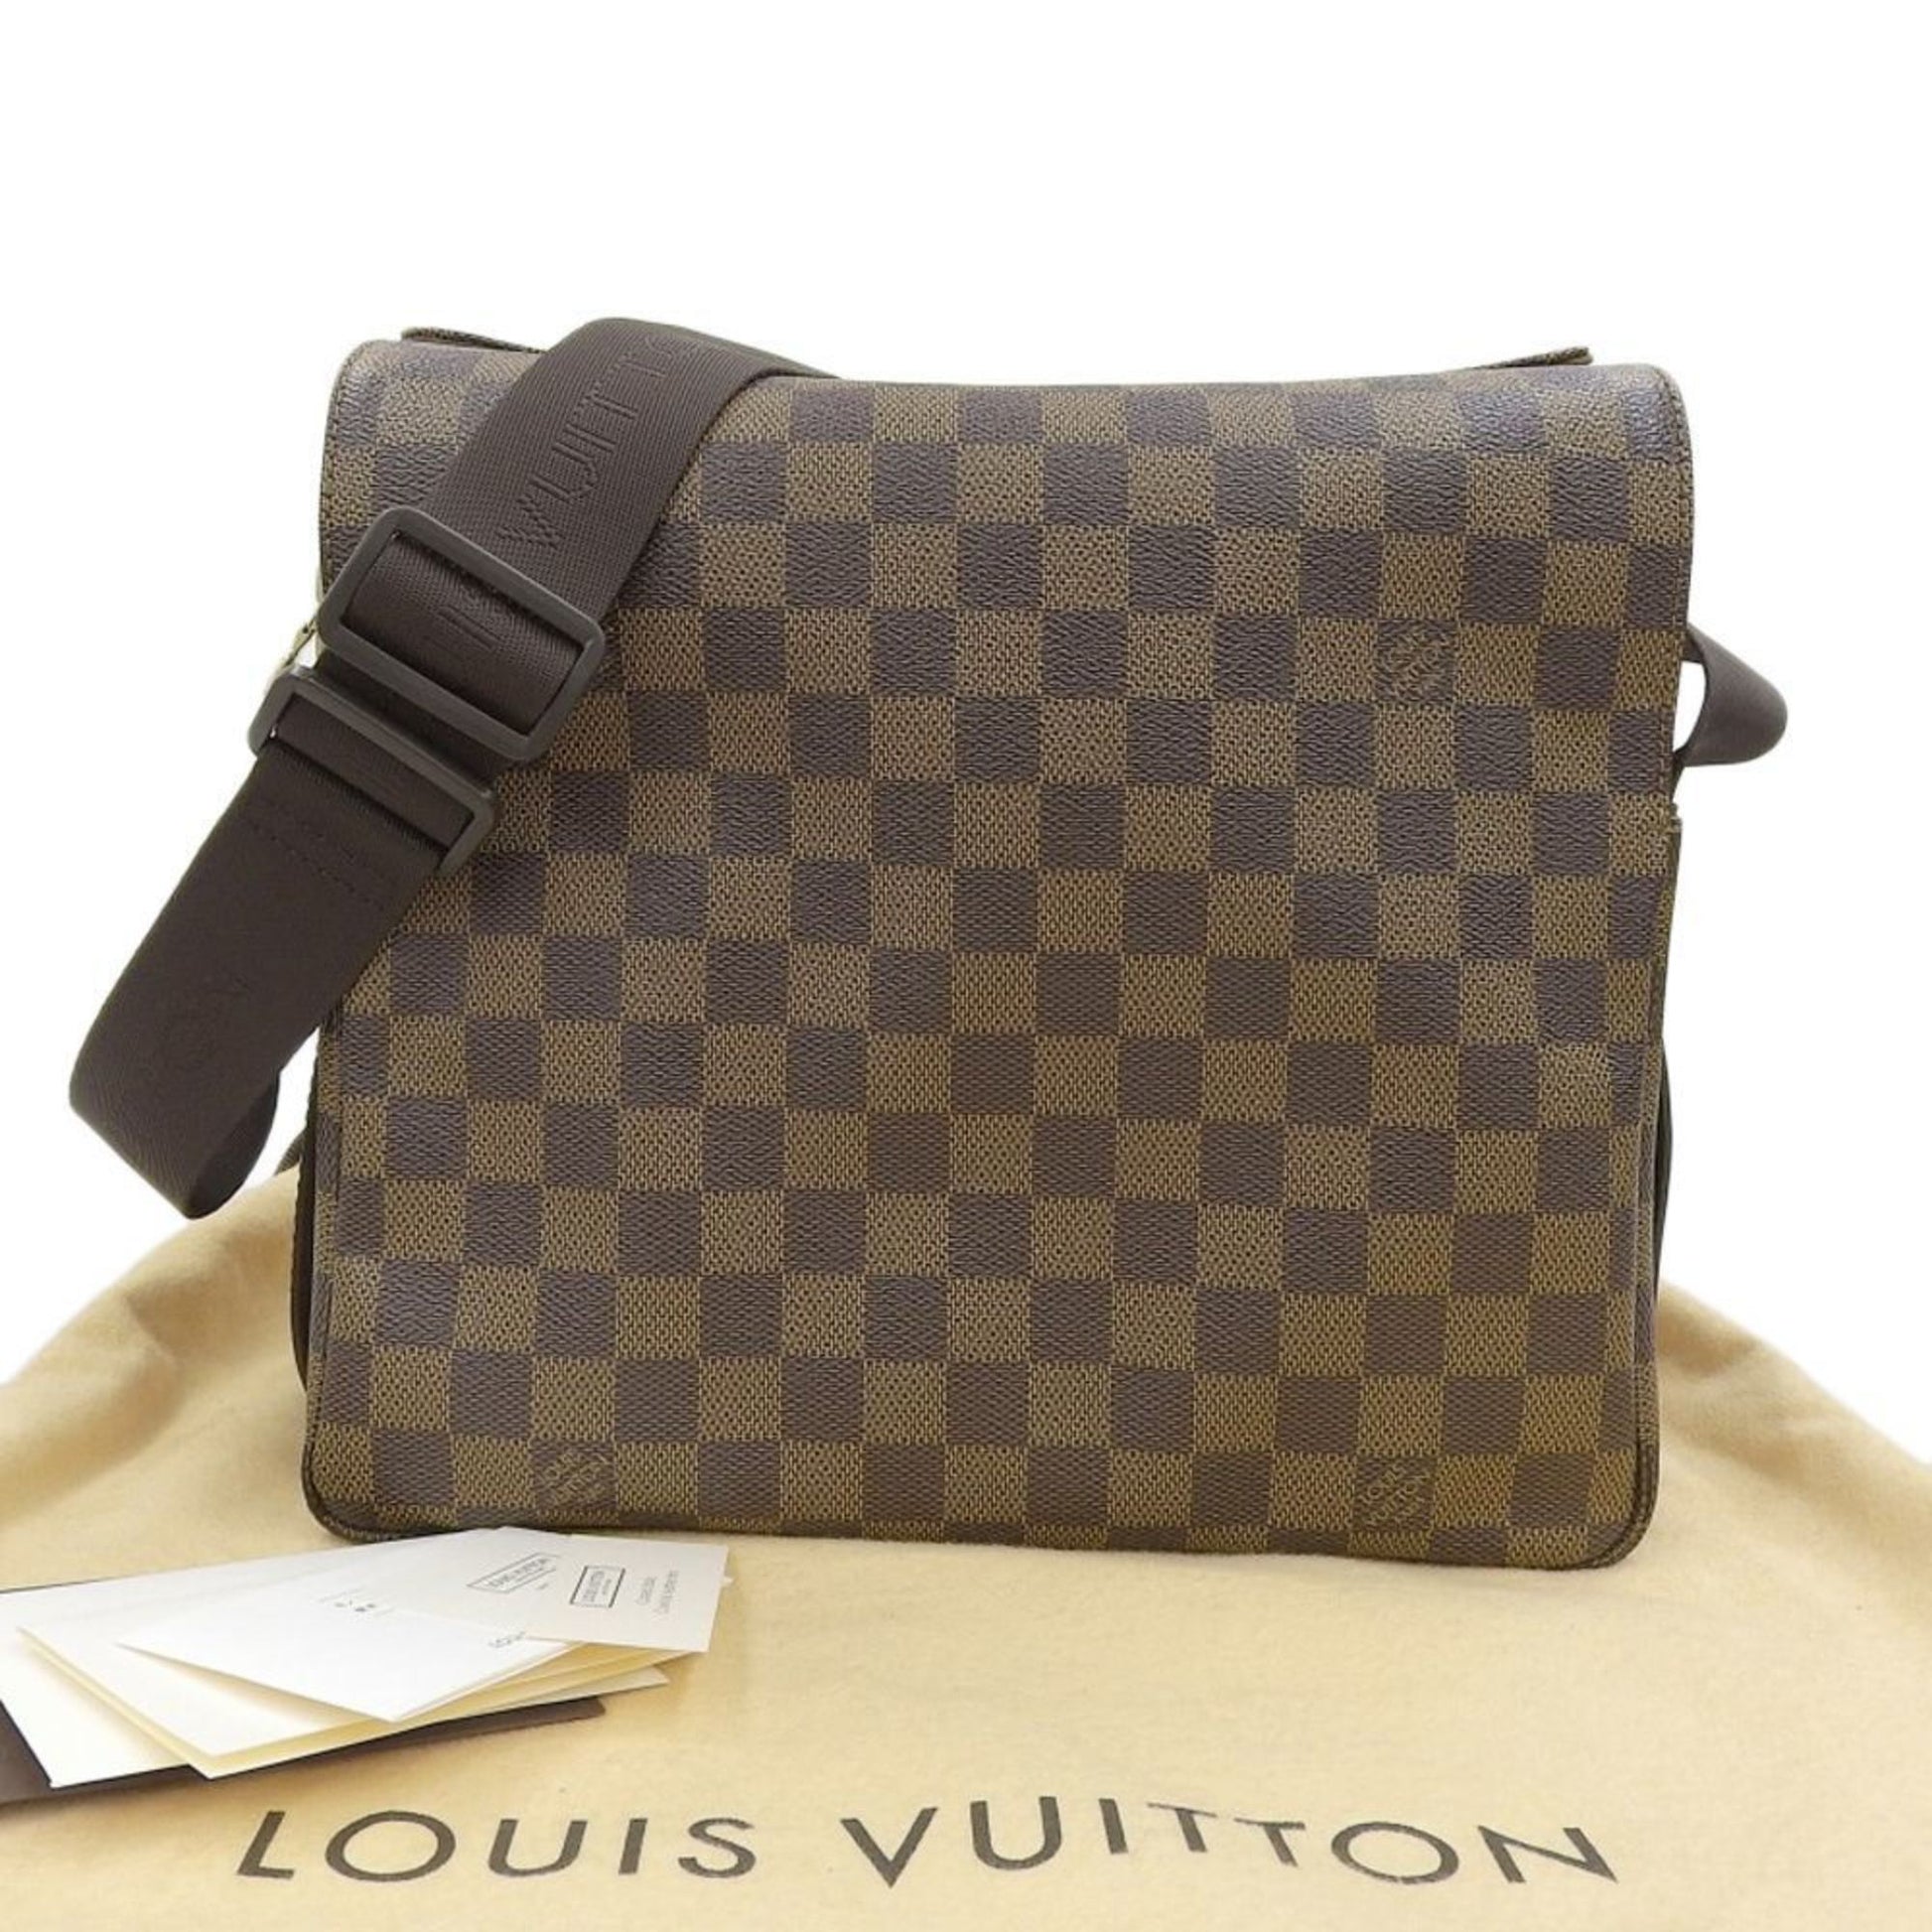 LOUIS VUITTON Authentic Damier Naviglio Messenger Shoulder Unisex Bag Brown